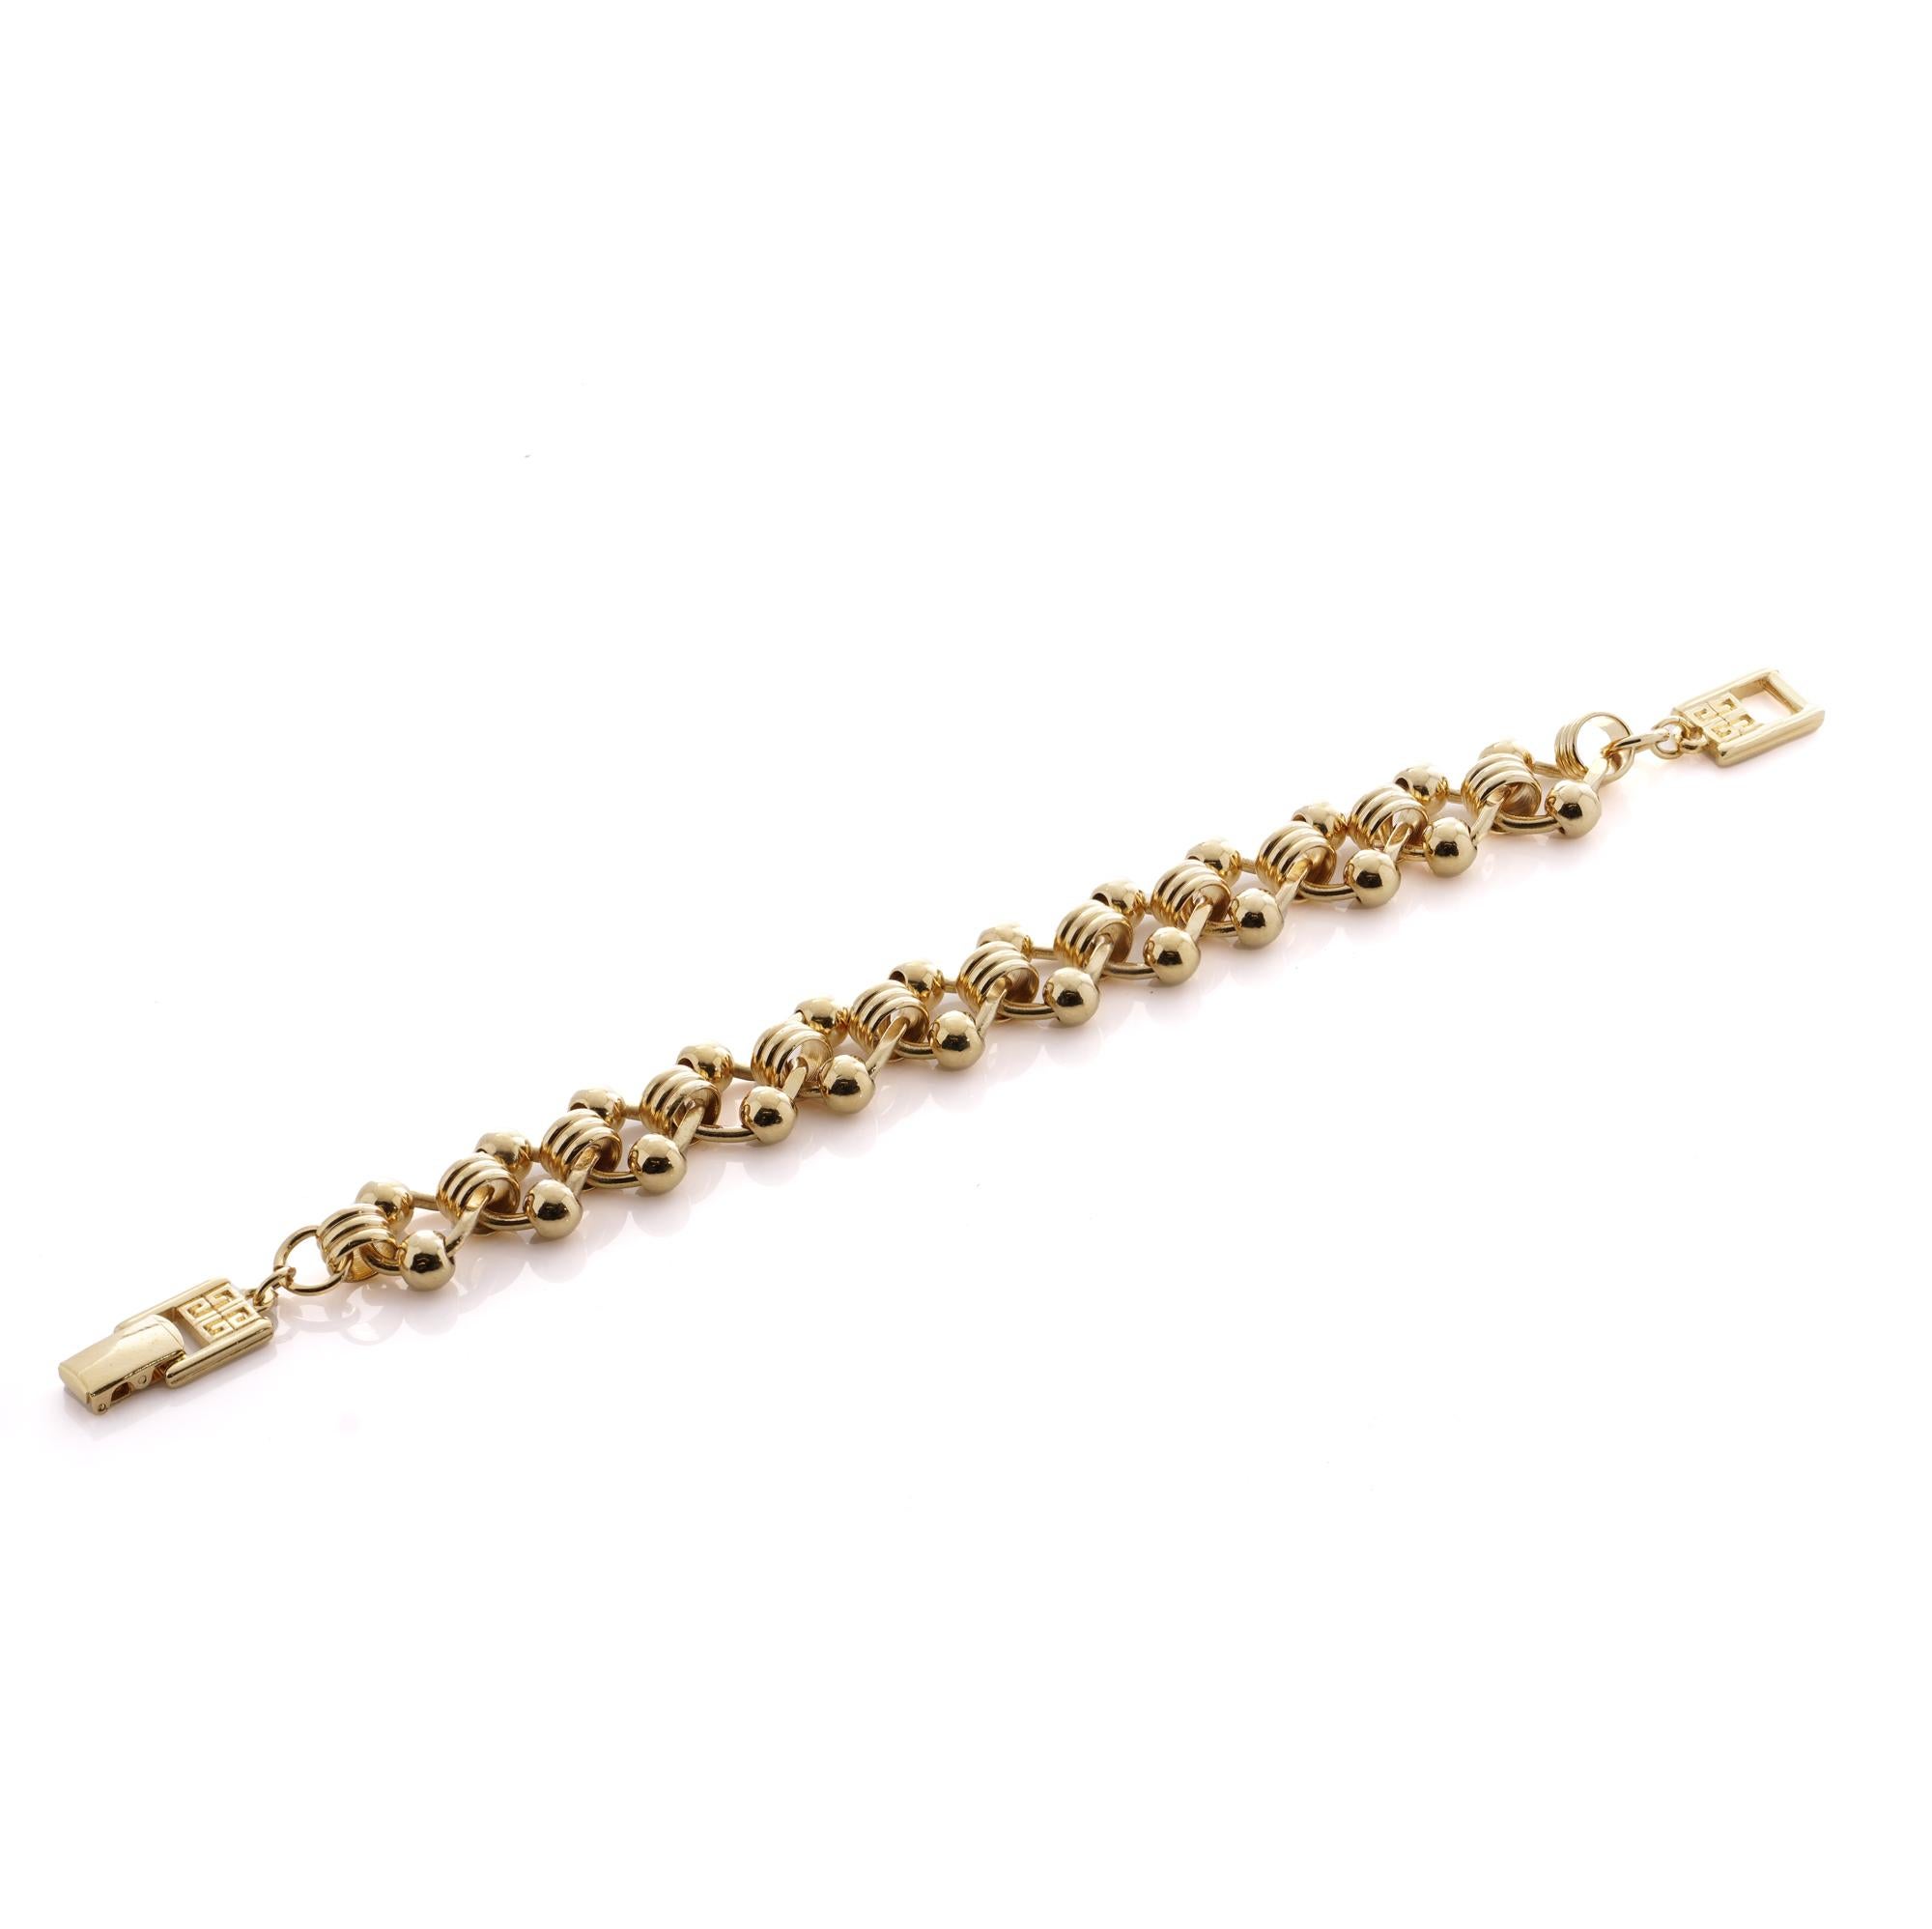 Voici une pièce d'élégance intemporelle de la célèbre maison Givenchy, le bracelet à maillons vintage en ton or, datant de la fin des années 1990. Réalisé avec une attention méticuleuse aux détails, ce bracelet exsude la sophistication et le